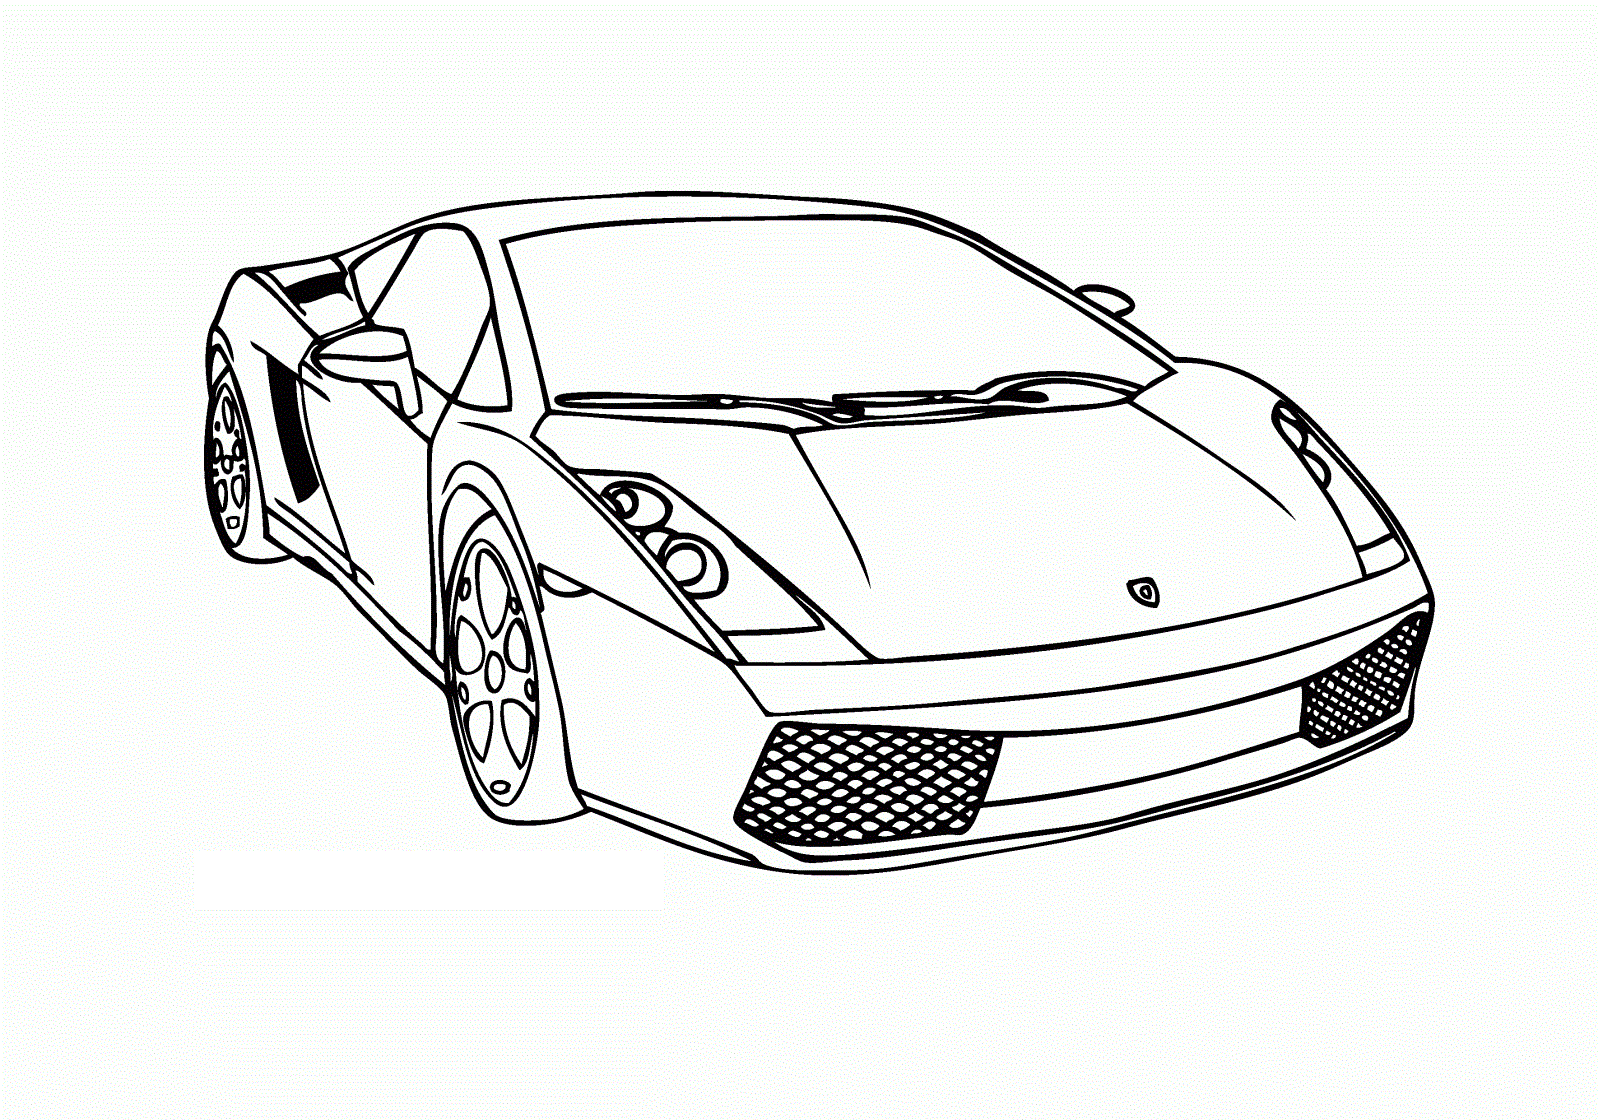 Dessin un beau dessin de voiture de course   colorier et imprimer